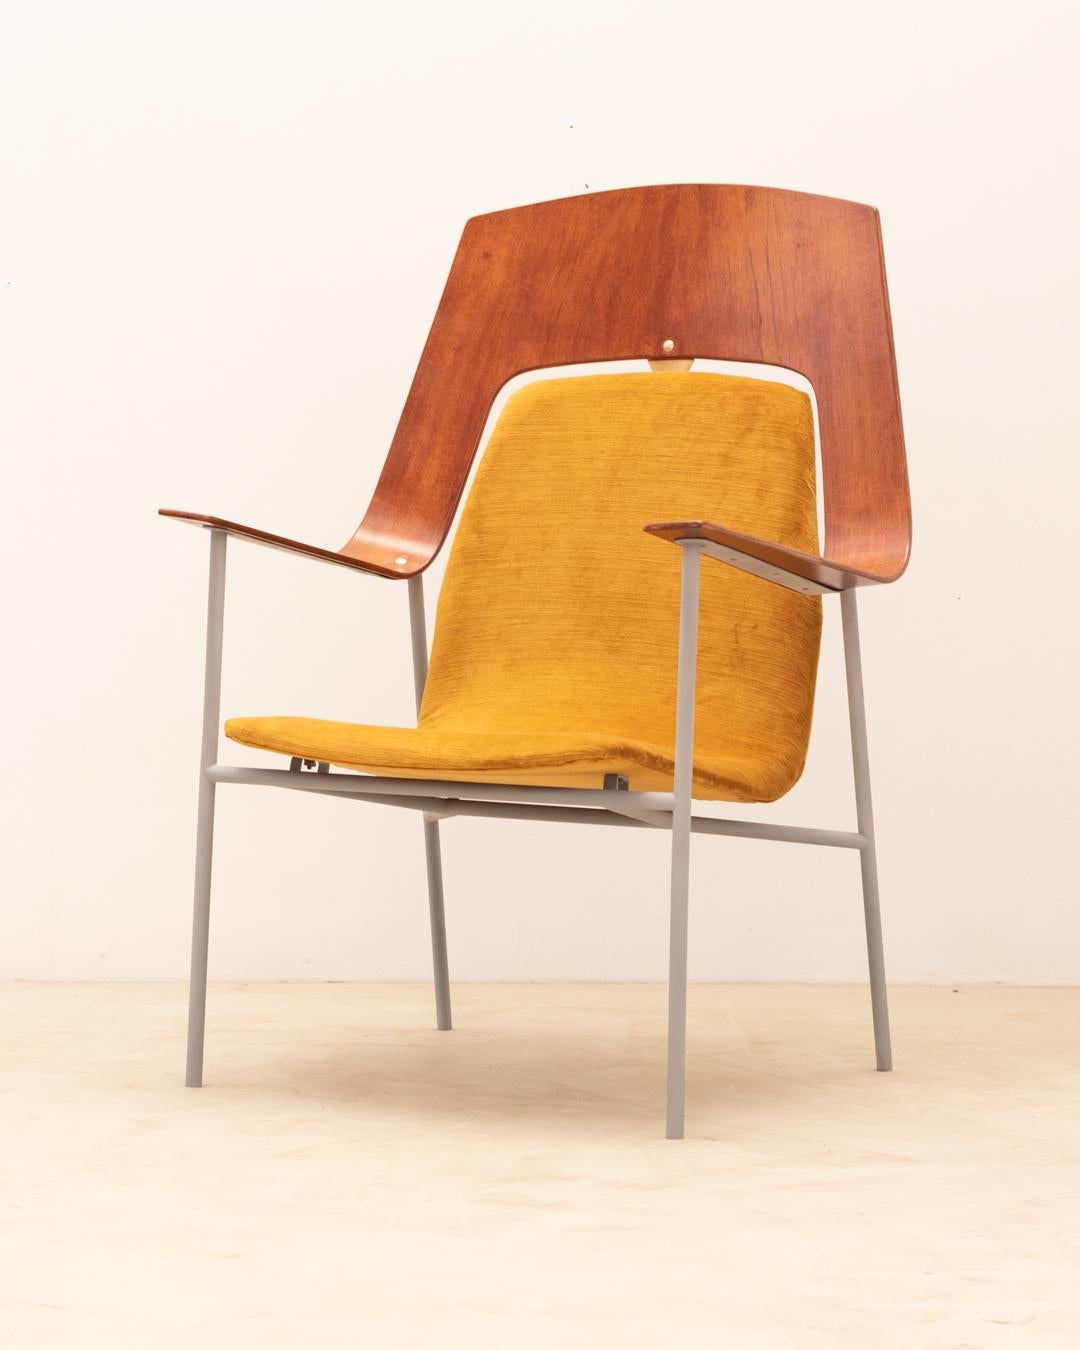 Sessel aus Sperrholz mit eleganten Messingdetails 
Mit einem eleganten grauen Stahlfuß.
Neue Polstermöbel Samt
Hoher dekorativer Sessel in sehr gutem Vintage-Zustand 
Zögern Sie nicht, uns für weitere Informationen zu kontaktieren. Wir würden uns